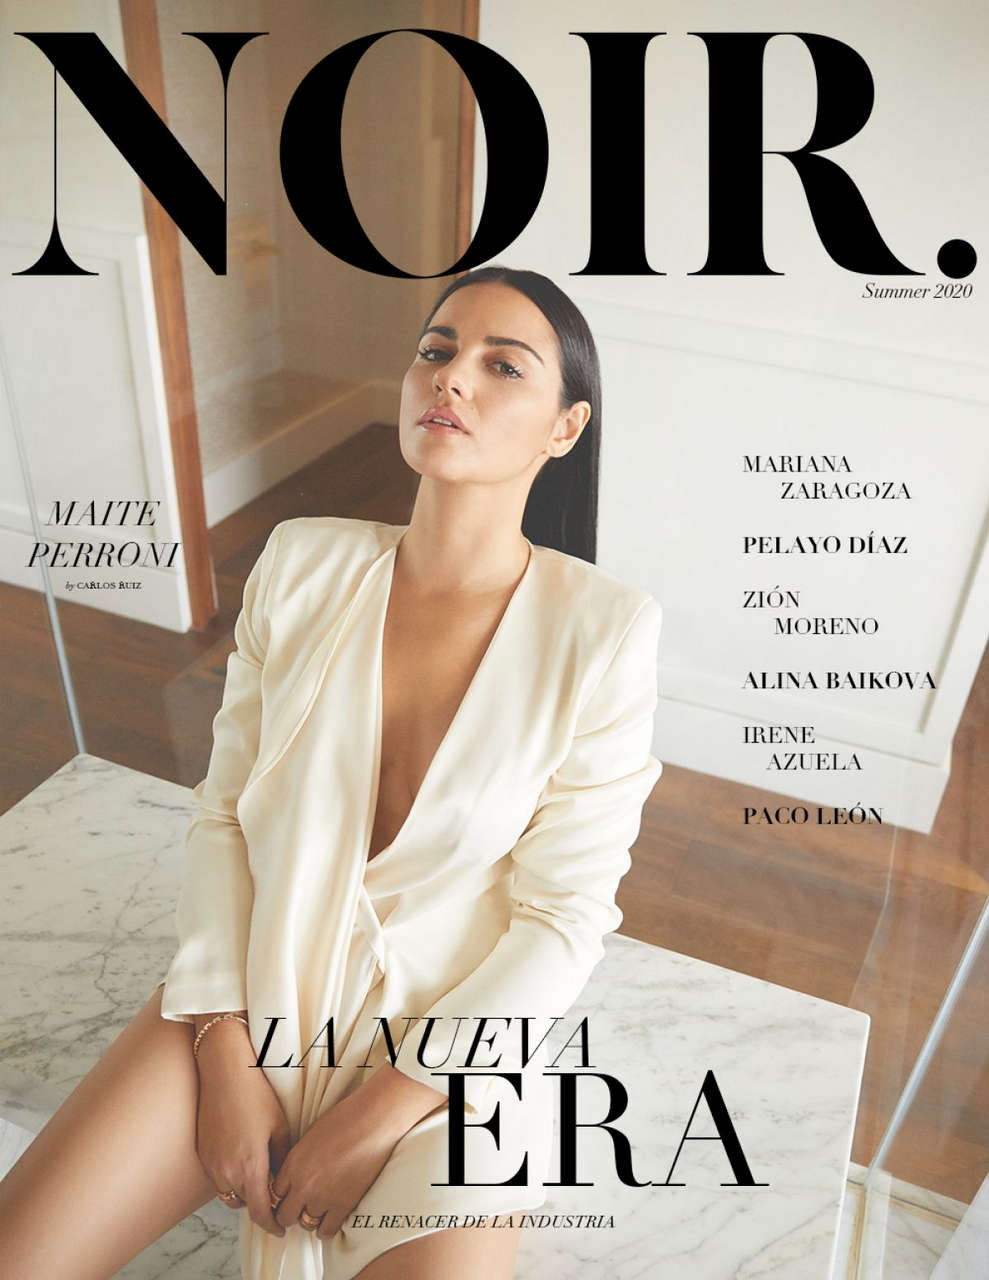 Maite Perroni For Noir Magazine July 2020 Issue